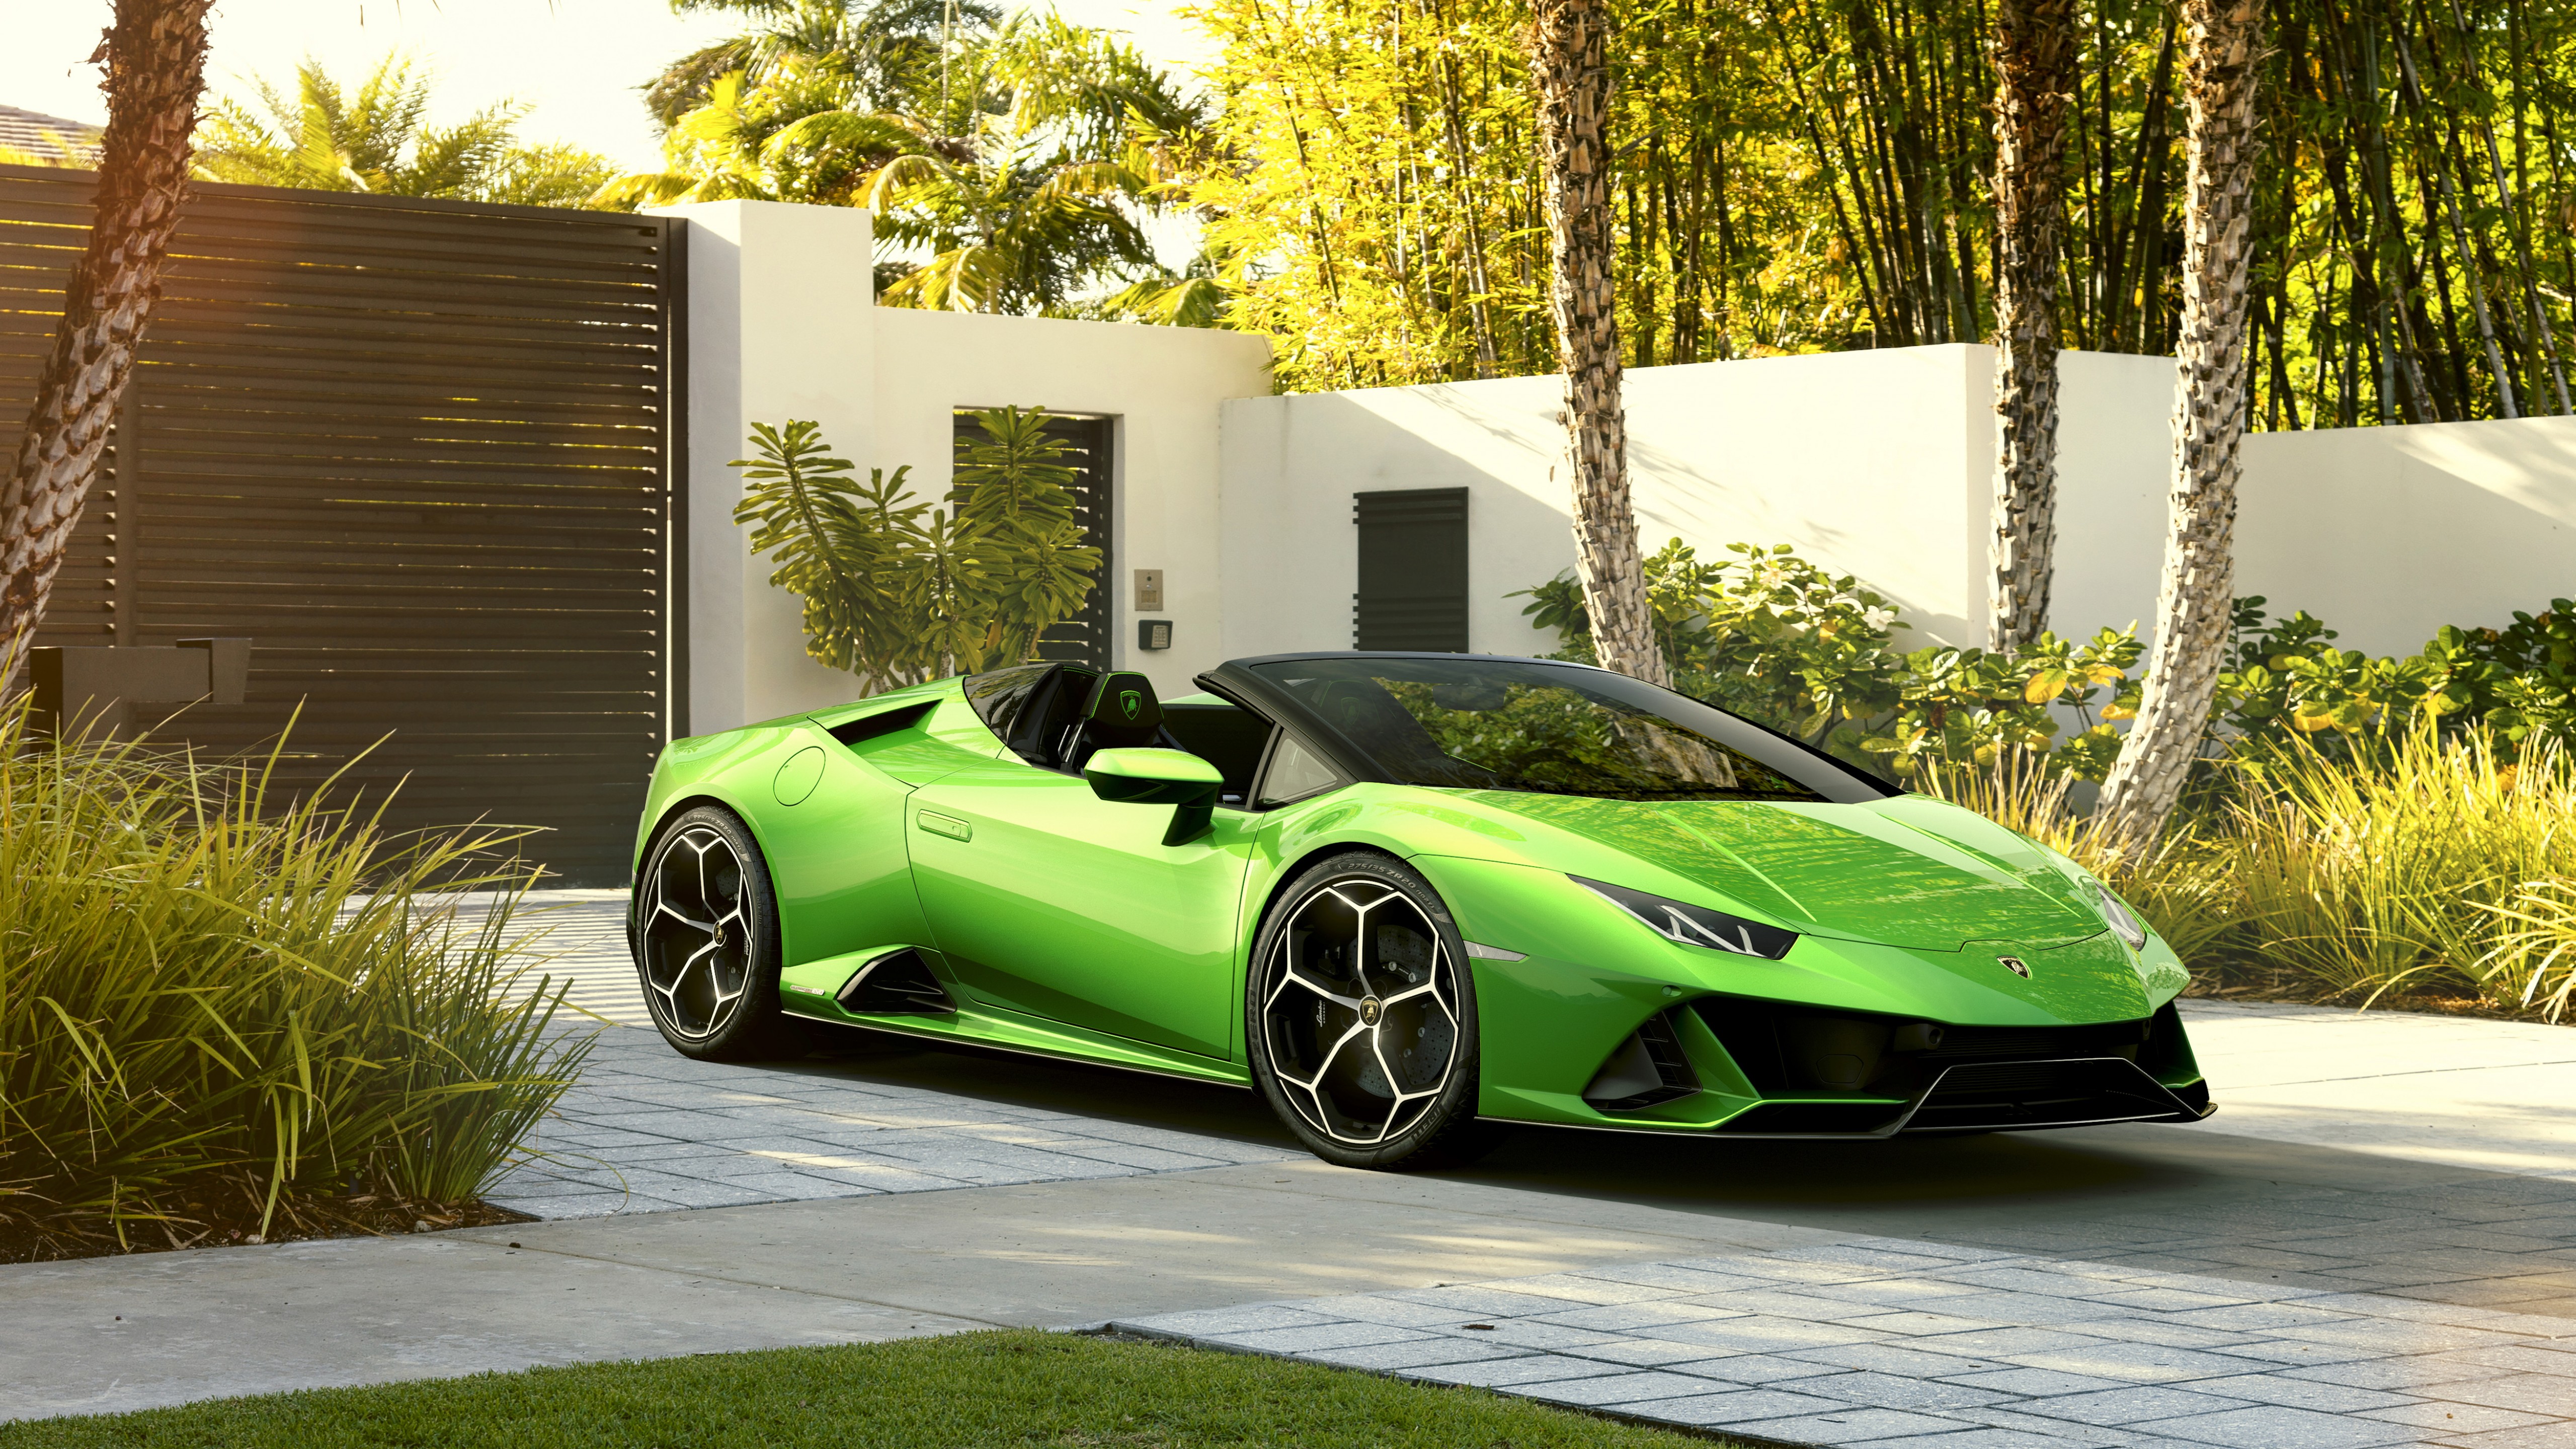 General 5120x2880 2019 (year) vehicle sports car green cars sunlight Lamborghini Lamborghini Huracan italian cars Volkswagen Group V10 engine